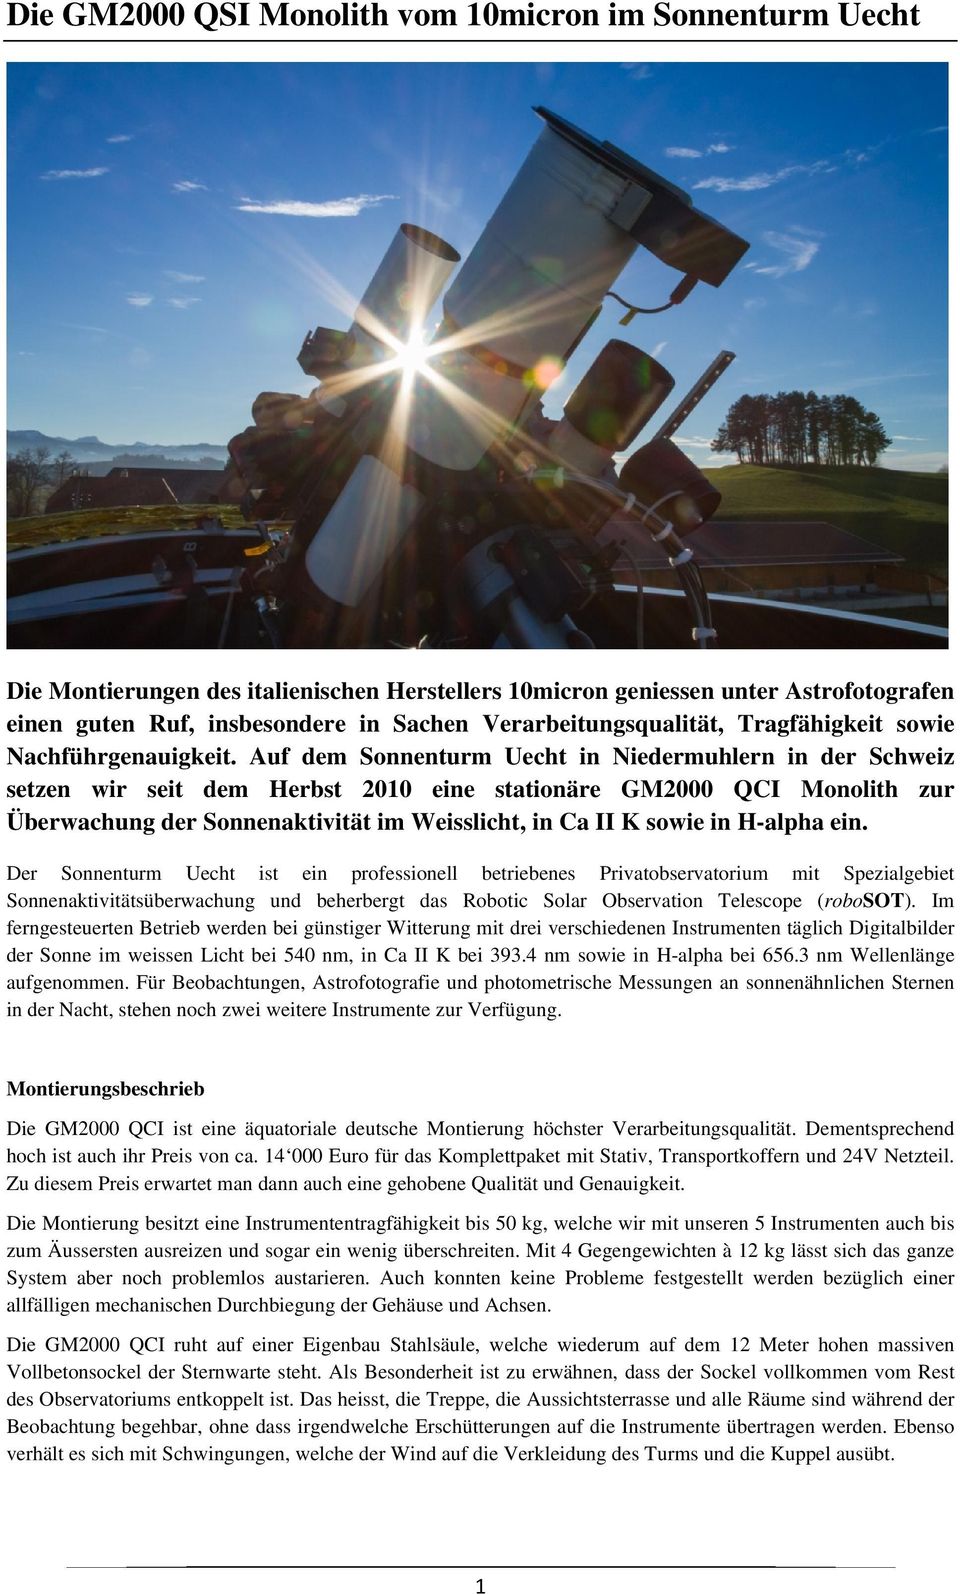 Auf dem Sonnenturm Uecht in Niedermuhlern in der Schweiz setzen wir seit dem Herbst 2010 eine stationäre GM2000 QCI Monolith zur Überwachung der Sonnenaktivität im Weisslicht, in Ca II K sowie in